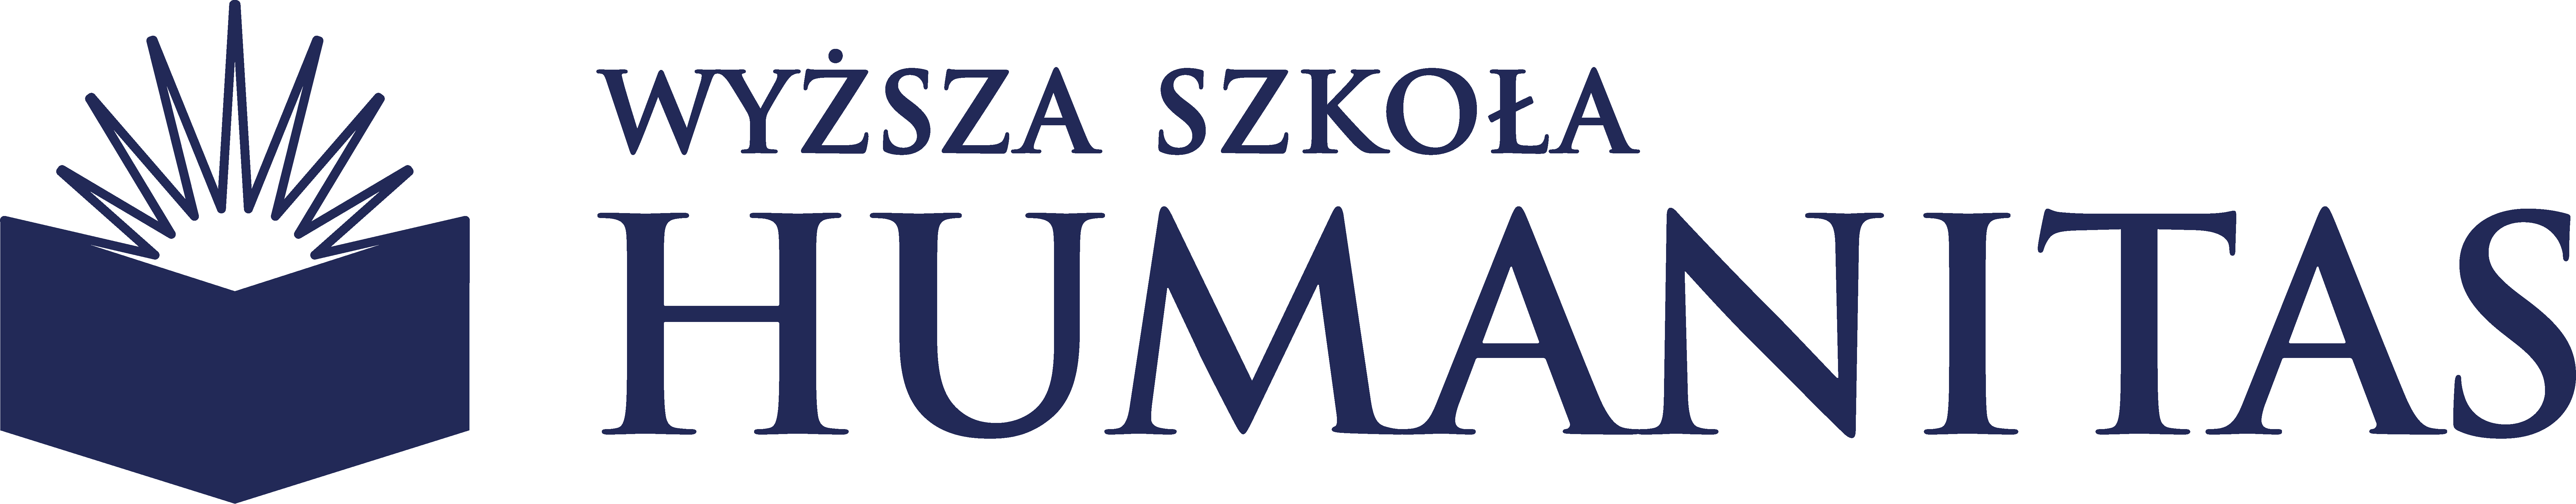 Logo Wyższa Szkoła Humanitas (WSH) - Sosnowiec